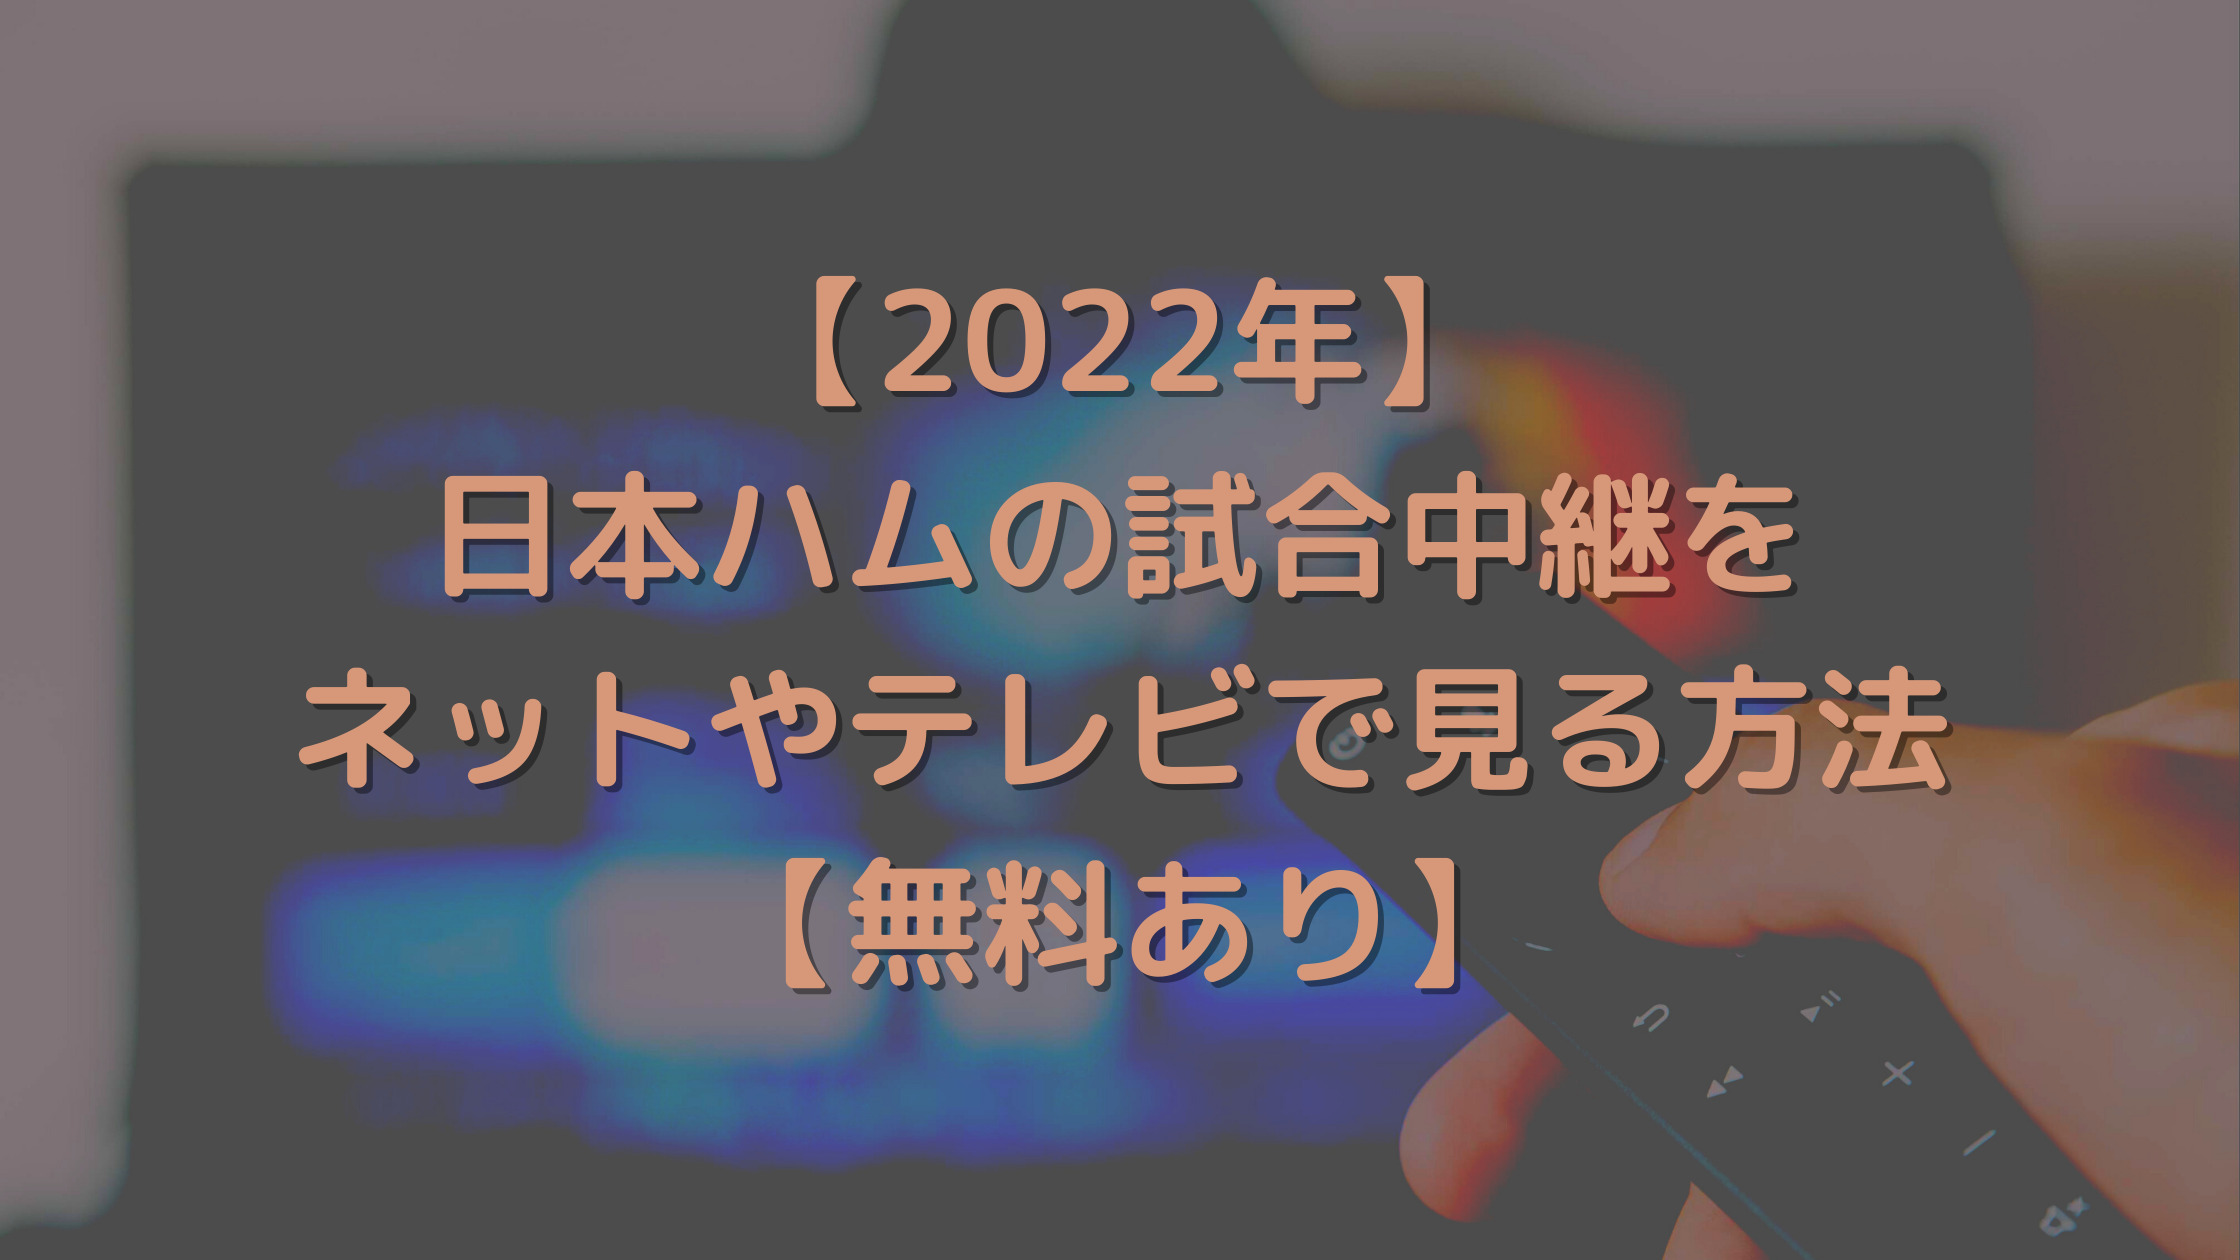 【2022年】日本ハムの試合中継をネットやテレビで見る方法【無料あり】